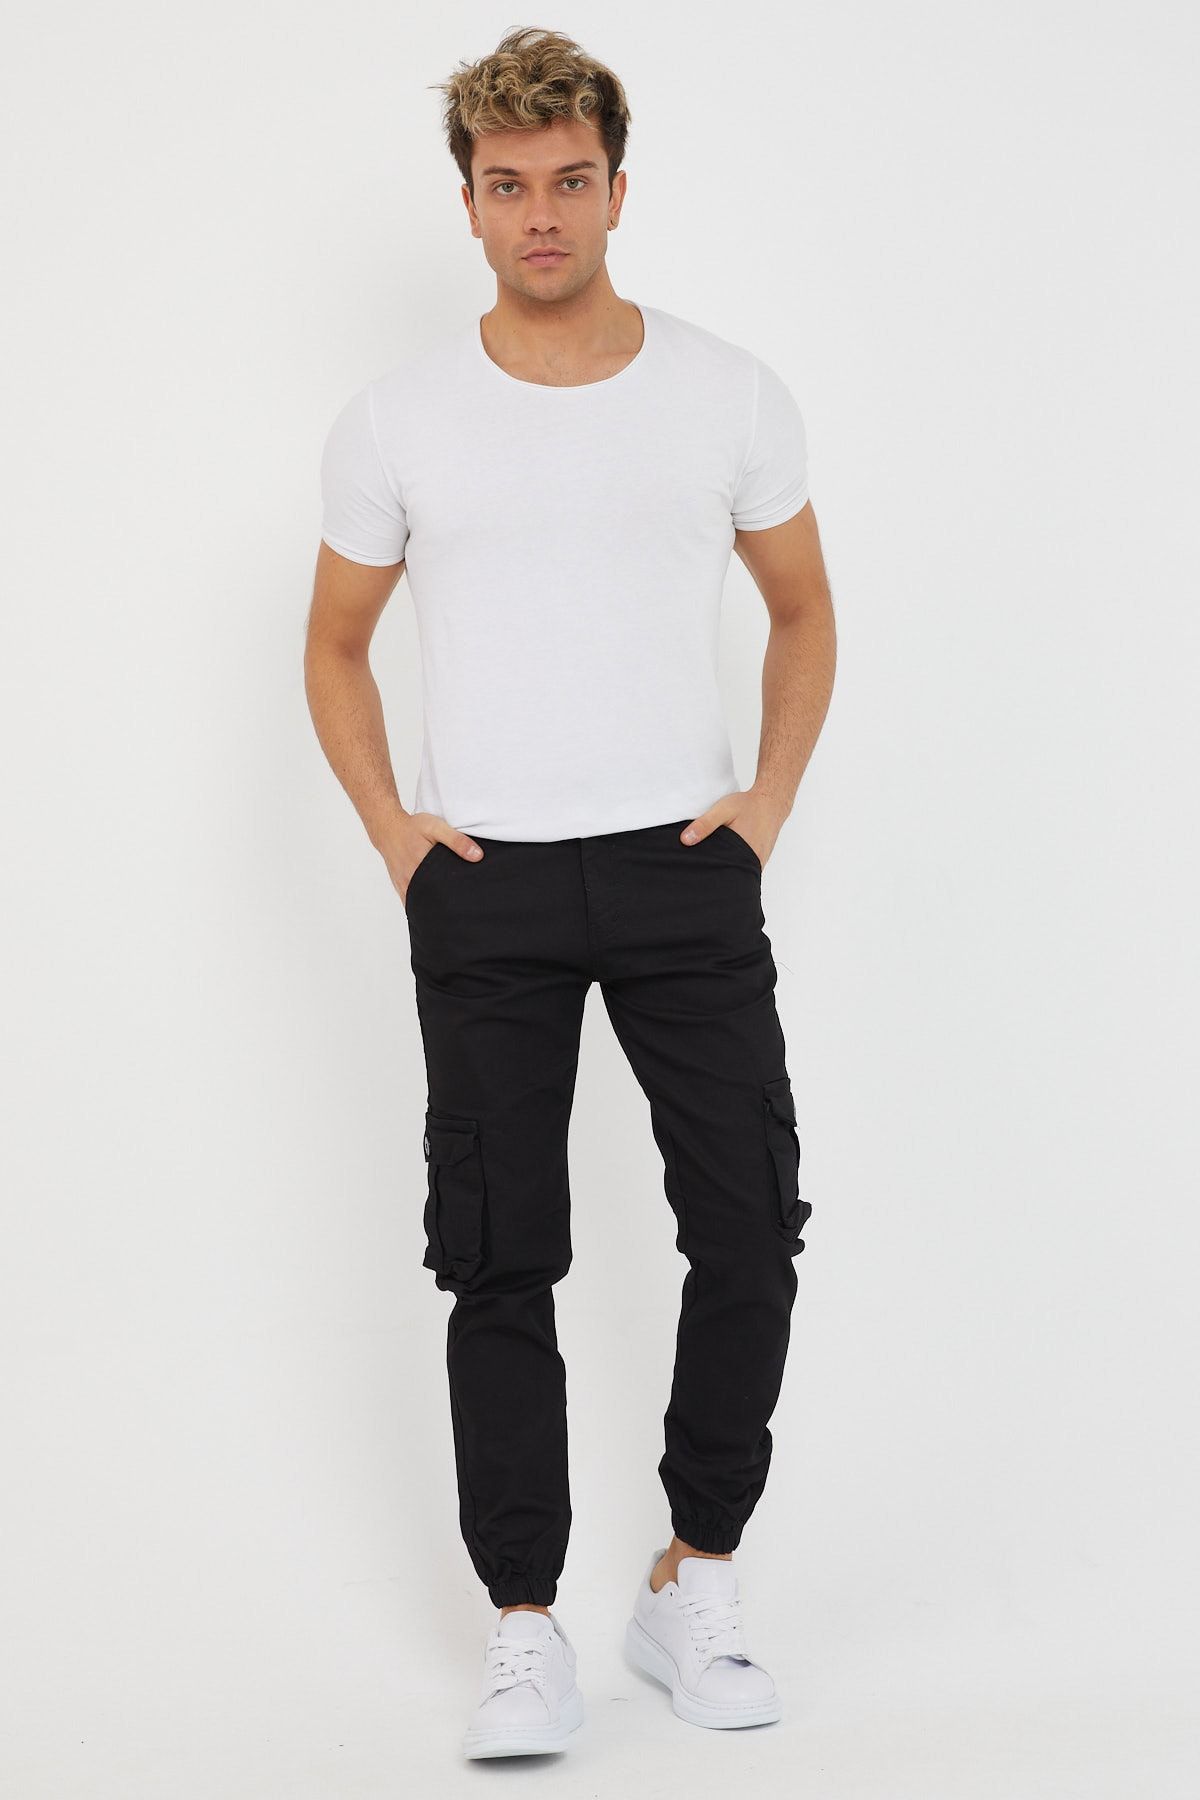 Y&G jeans Erkek Siyah Renk Kargo Cepli Pantalon